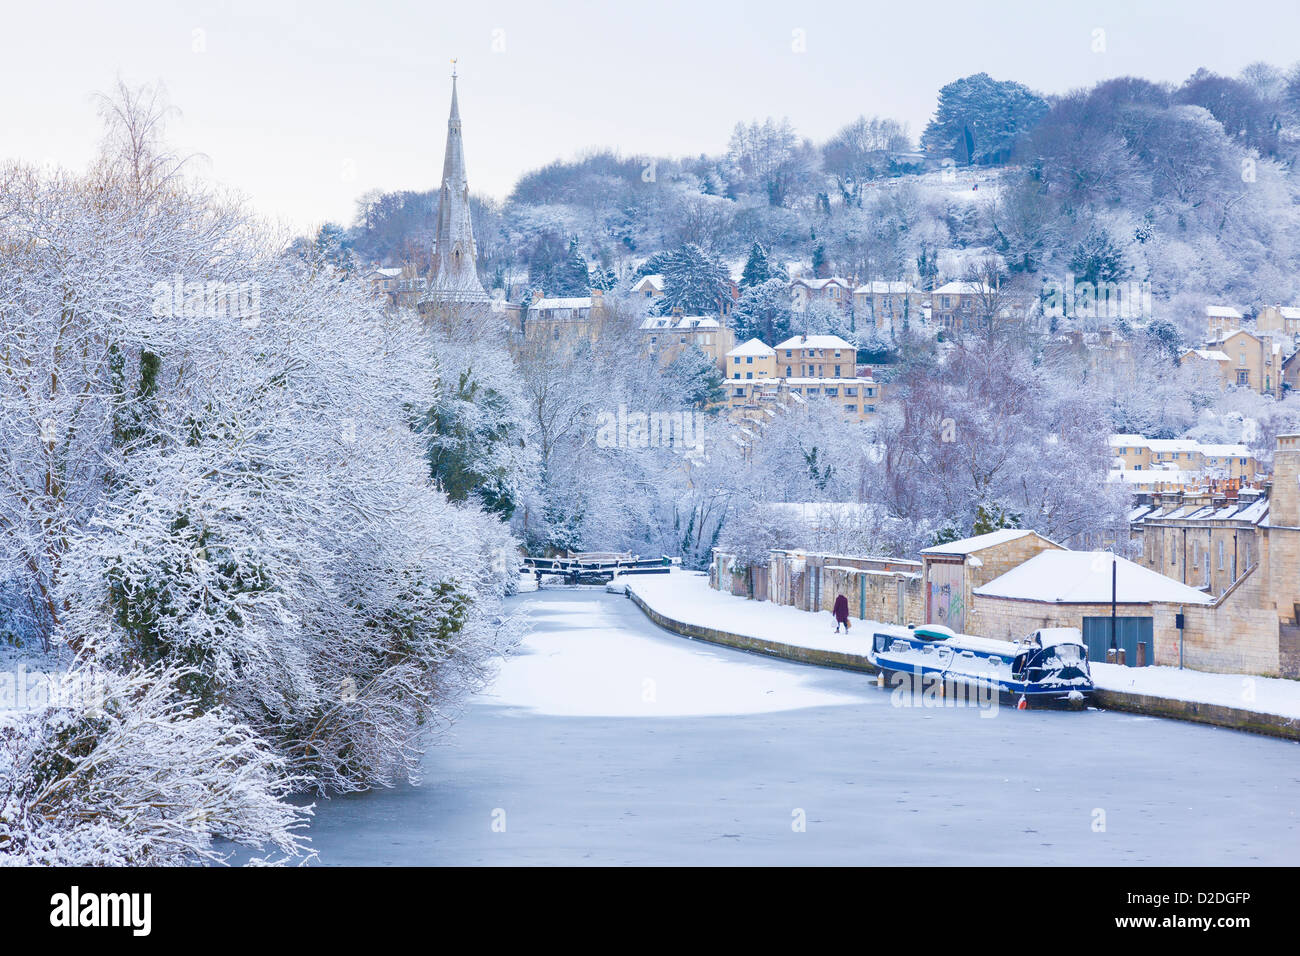 Scène d'hiver avec un canal gelé recouvert de neige, à Bath, en Angleterre. Banque D'Images